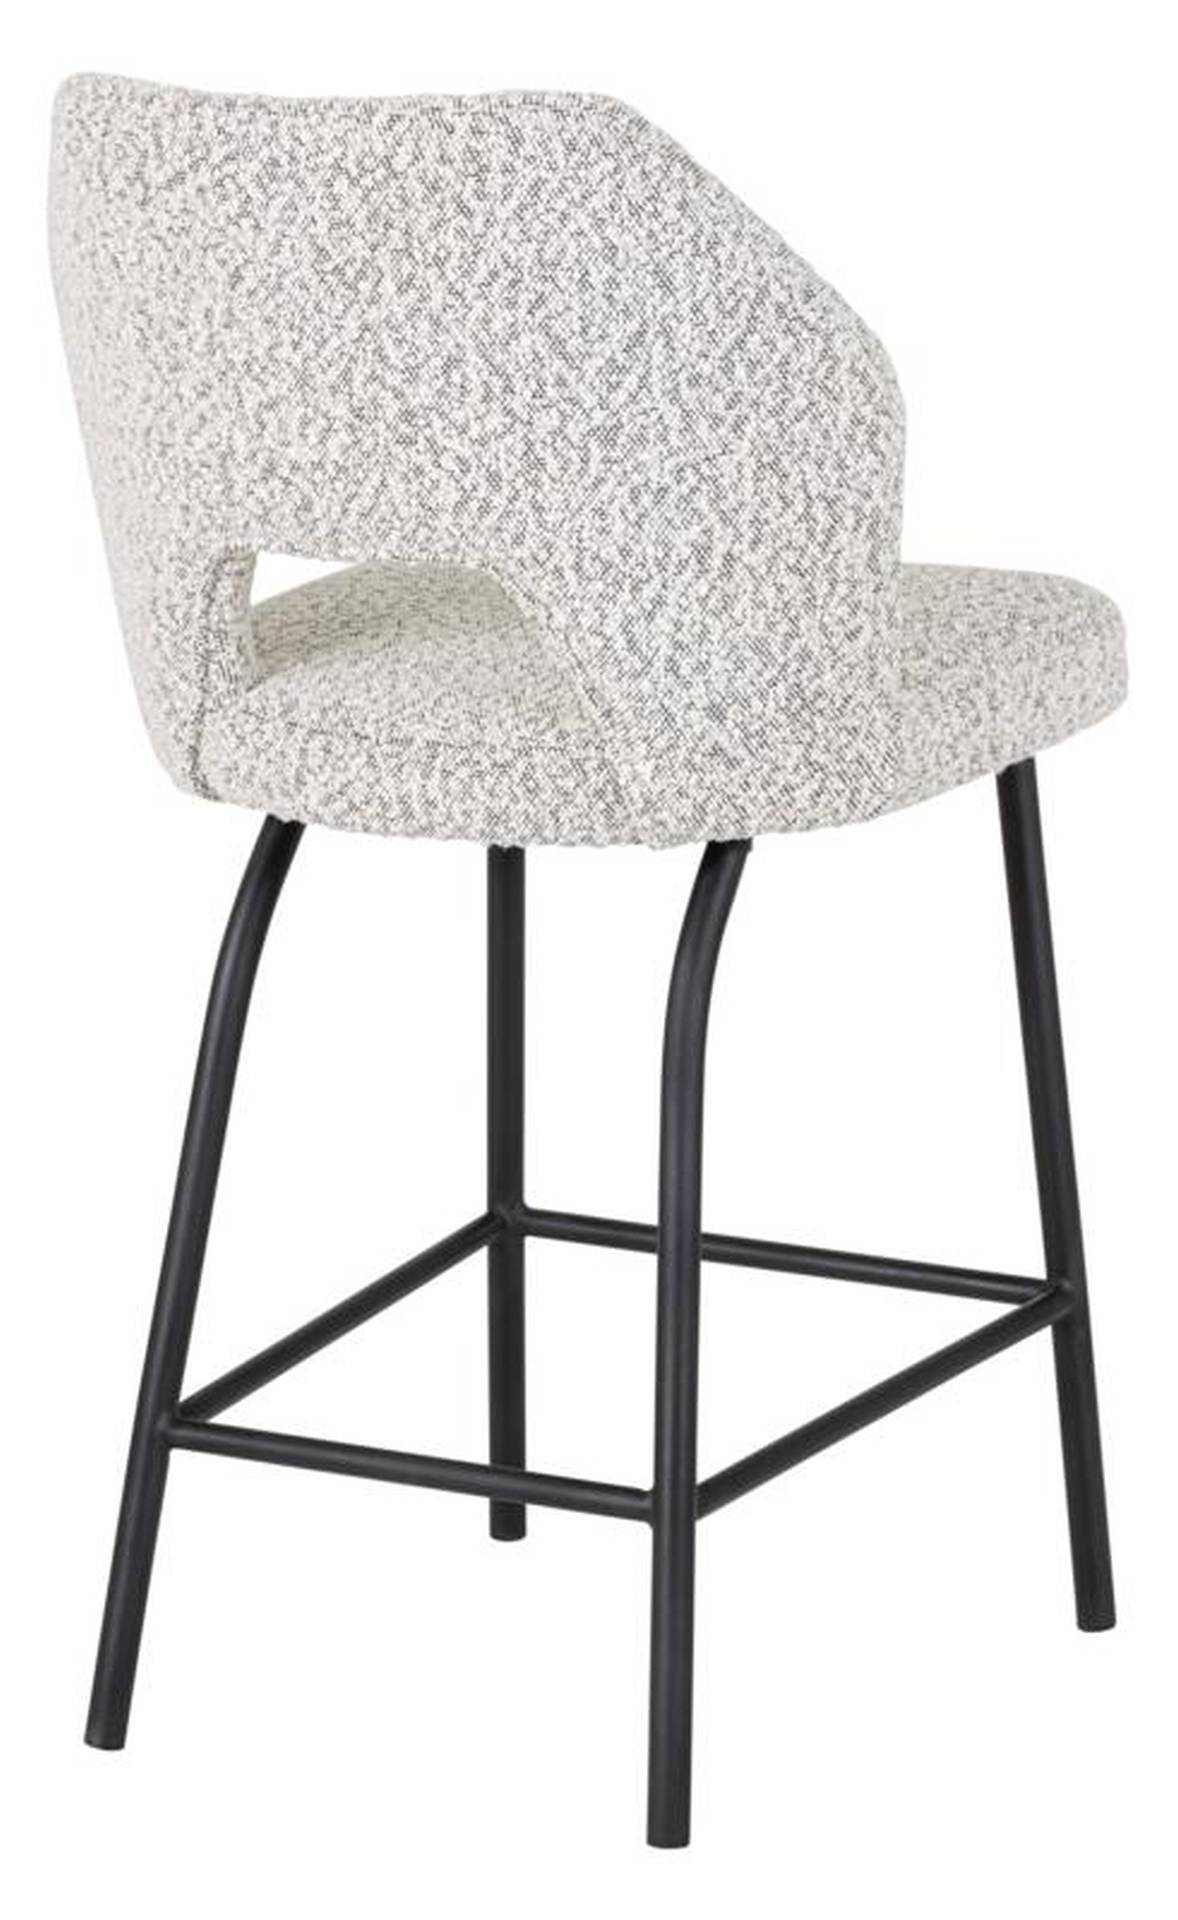 Der Barstuhl Bloom überzeugt mit seinem modernem aber auch schlichtem Design. Gefertigt wurde der Stuhl aus einem Boucle Stoff, welcher einen Hellgrauen Farbton besitzt. Das Gestell ist aus Metall und ist Schwarz.